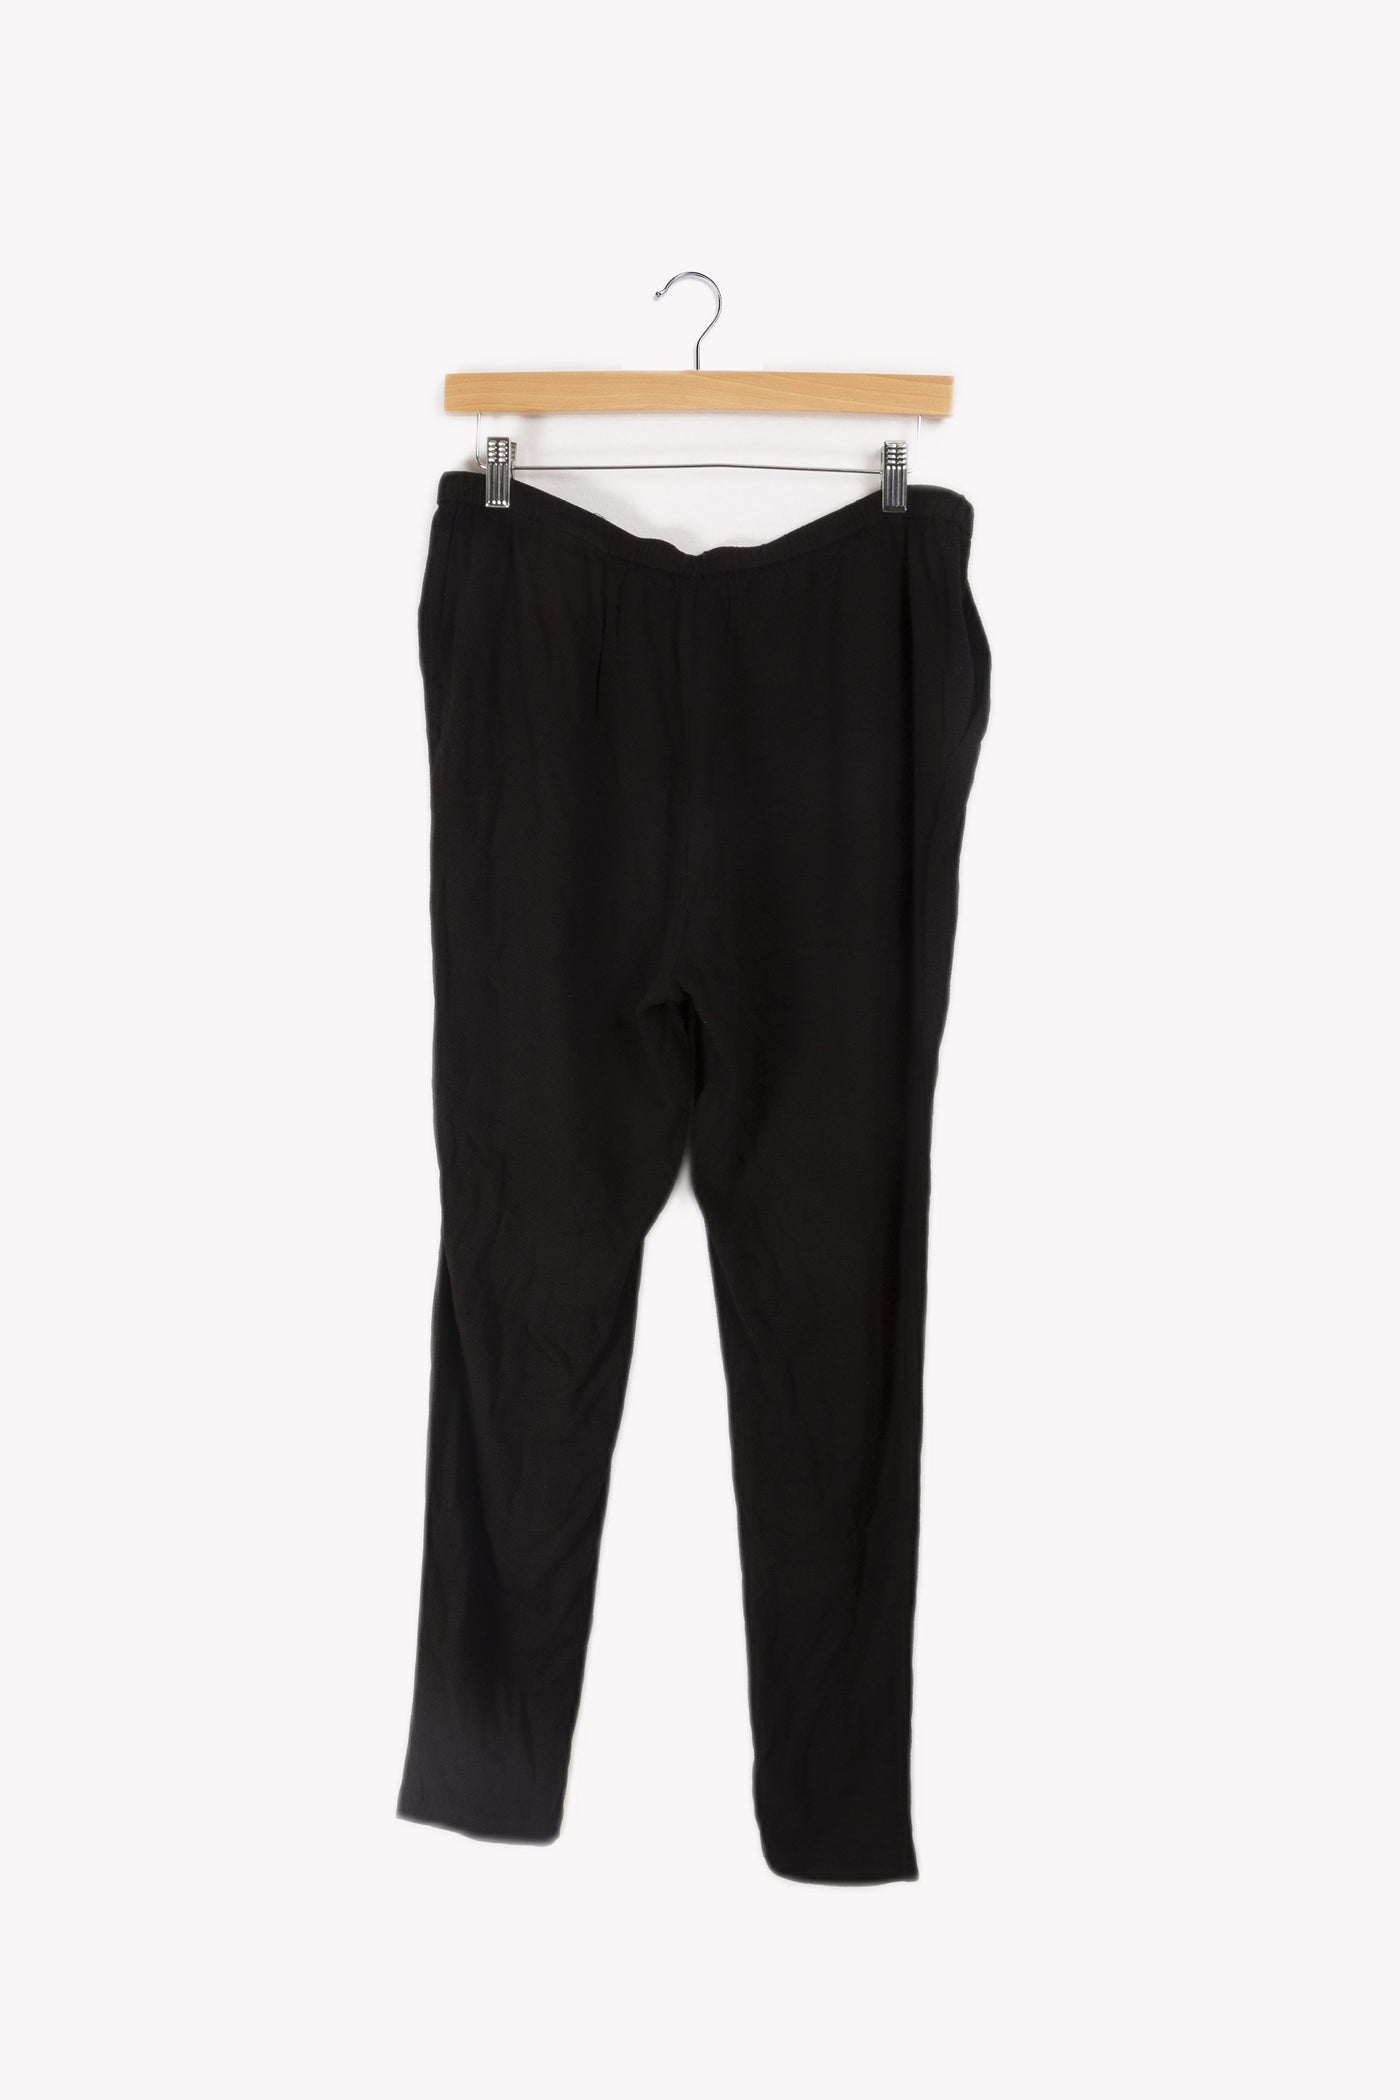 Pantalon noir - L/40